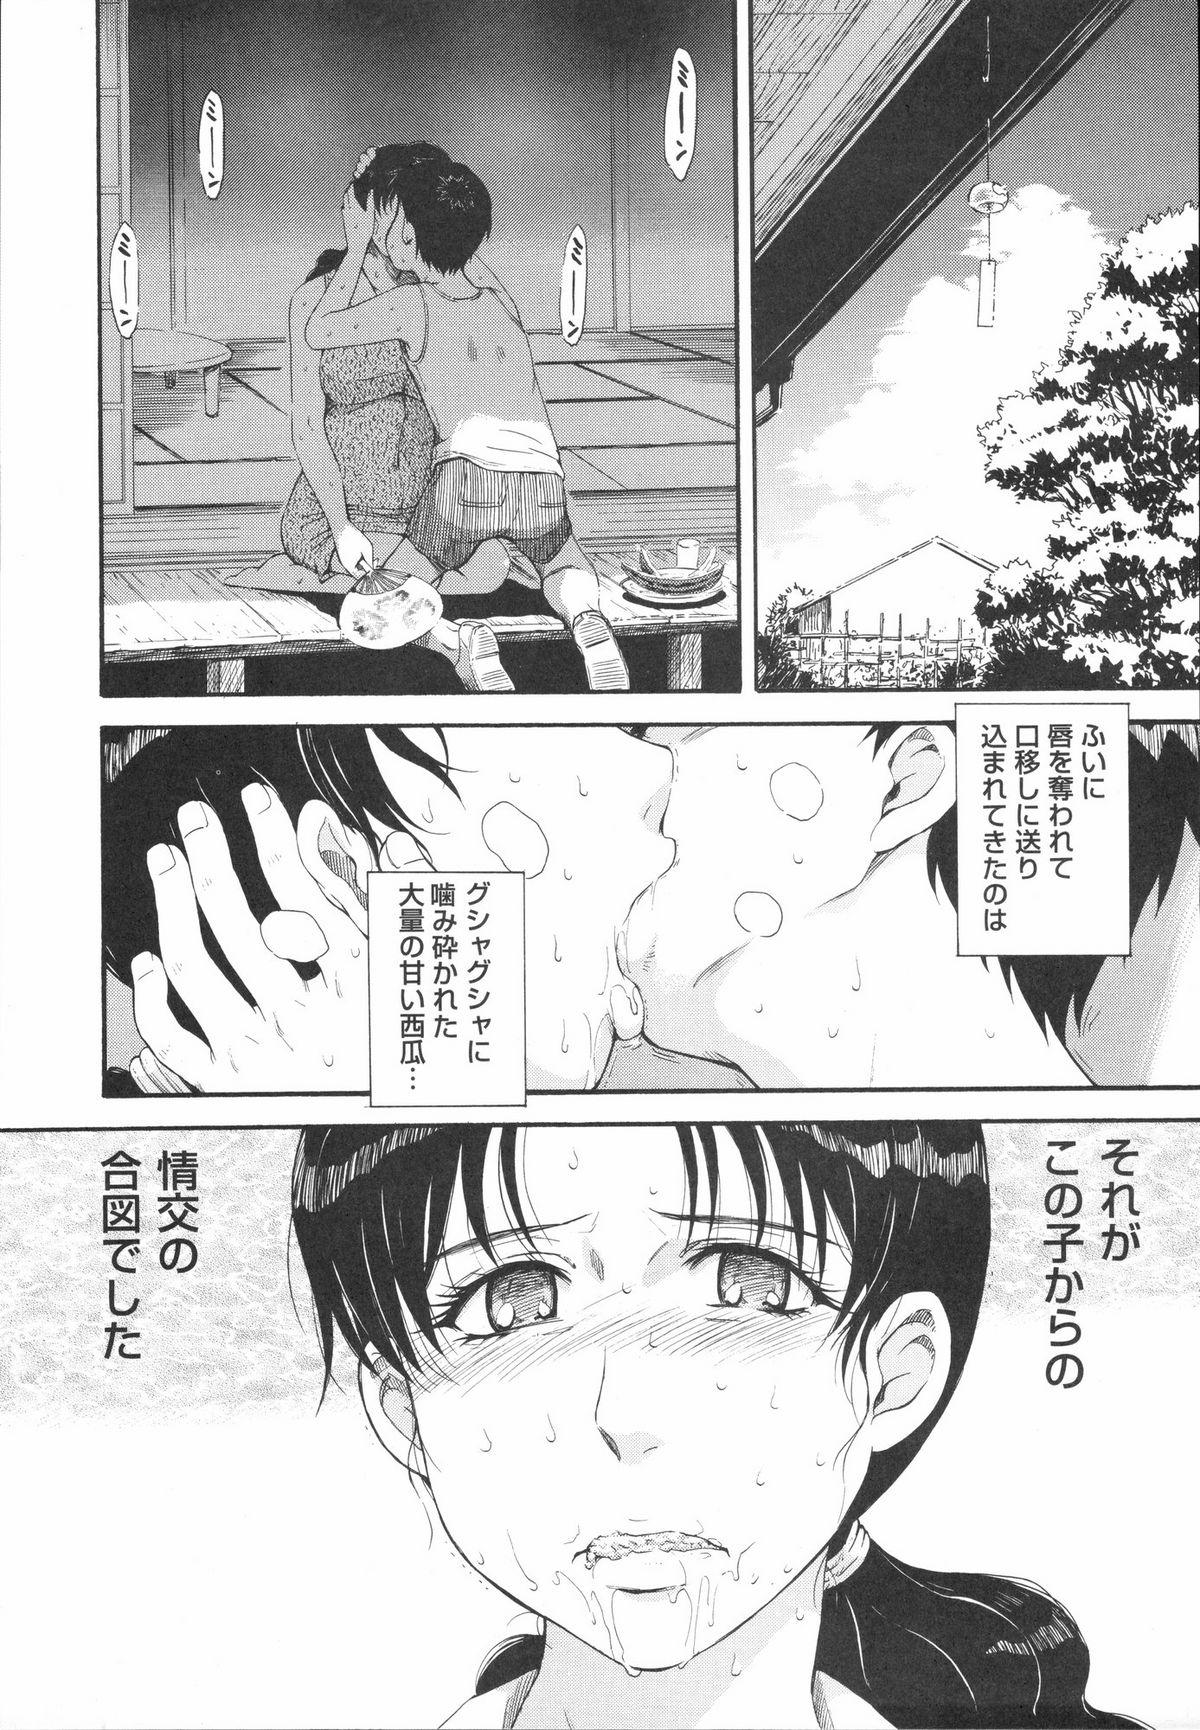 Soloboy Shinzui Vol. 1 Clip - Page 10